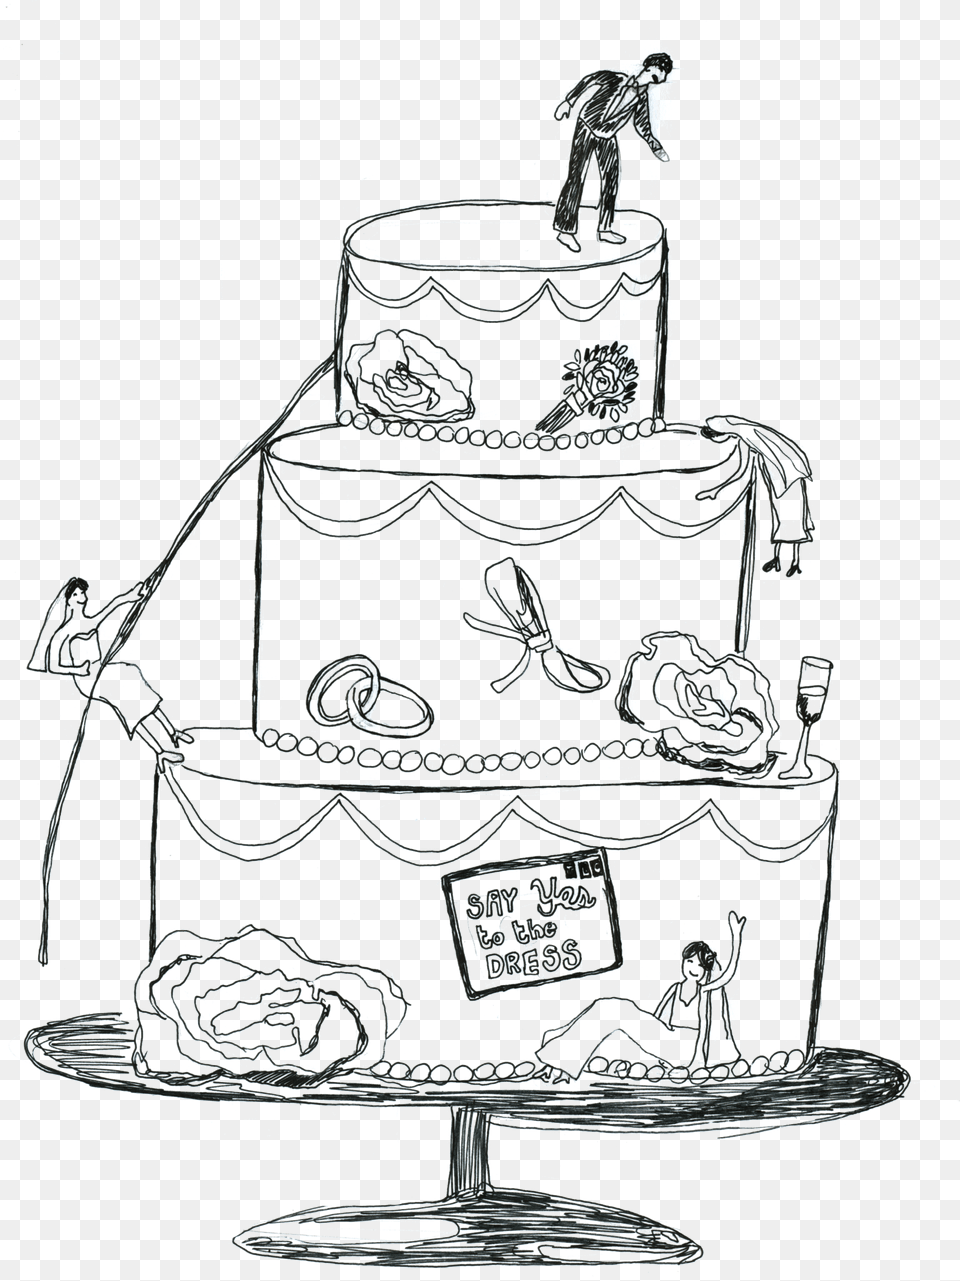 Temple Bells, Cake, Food, Dessert, Adult Png Image